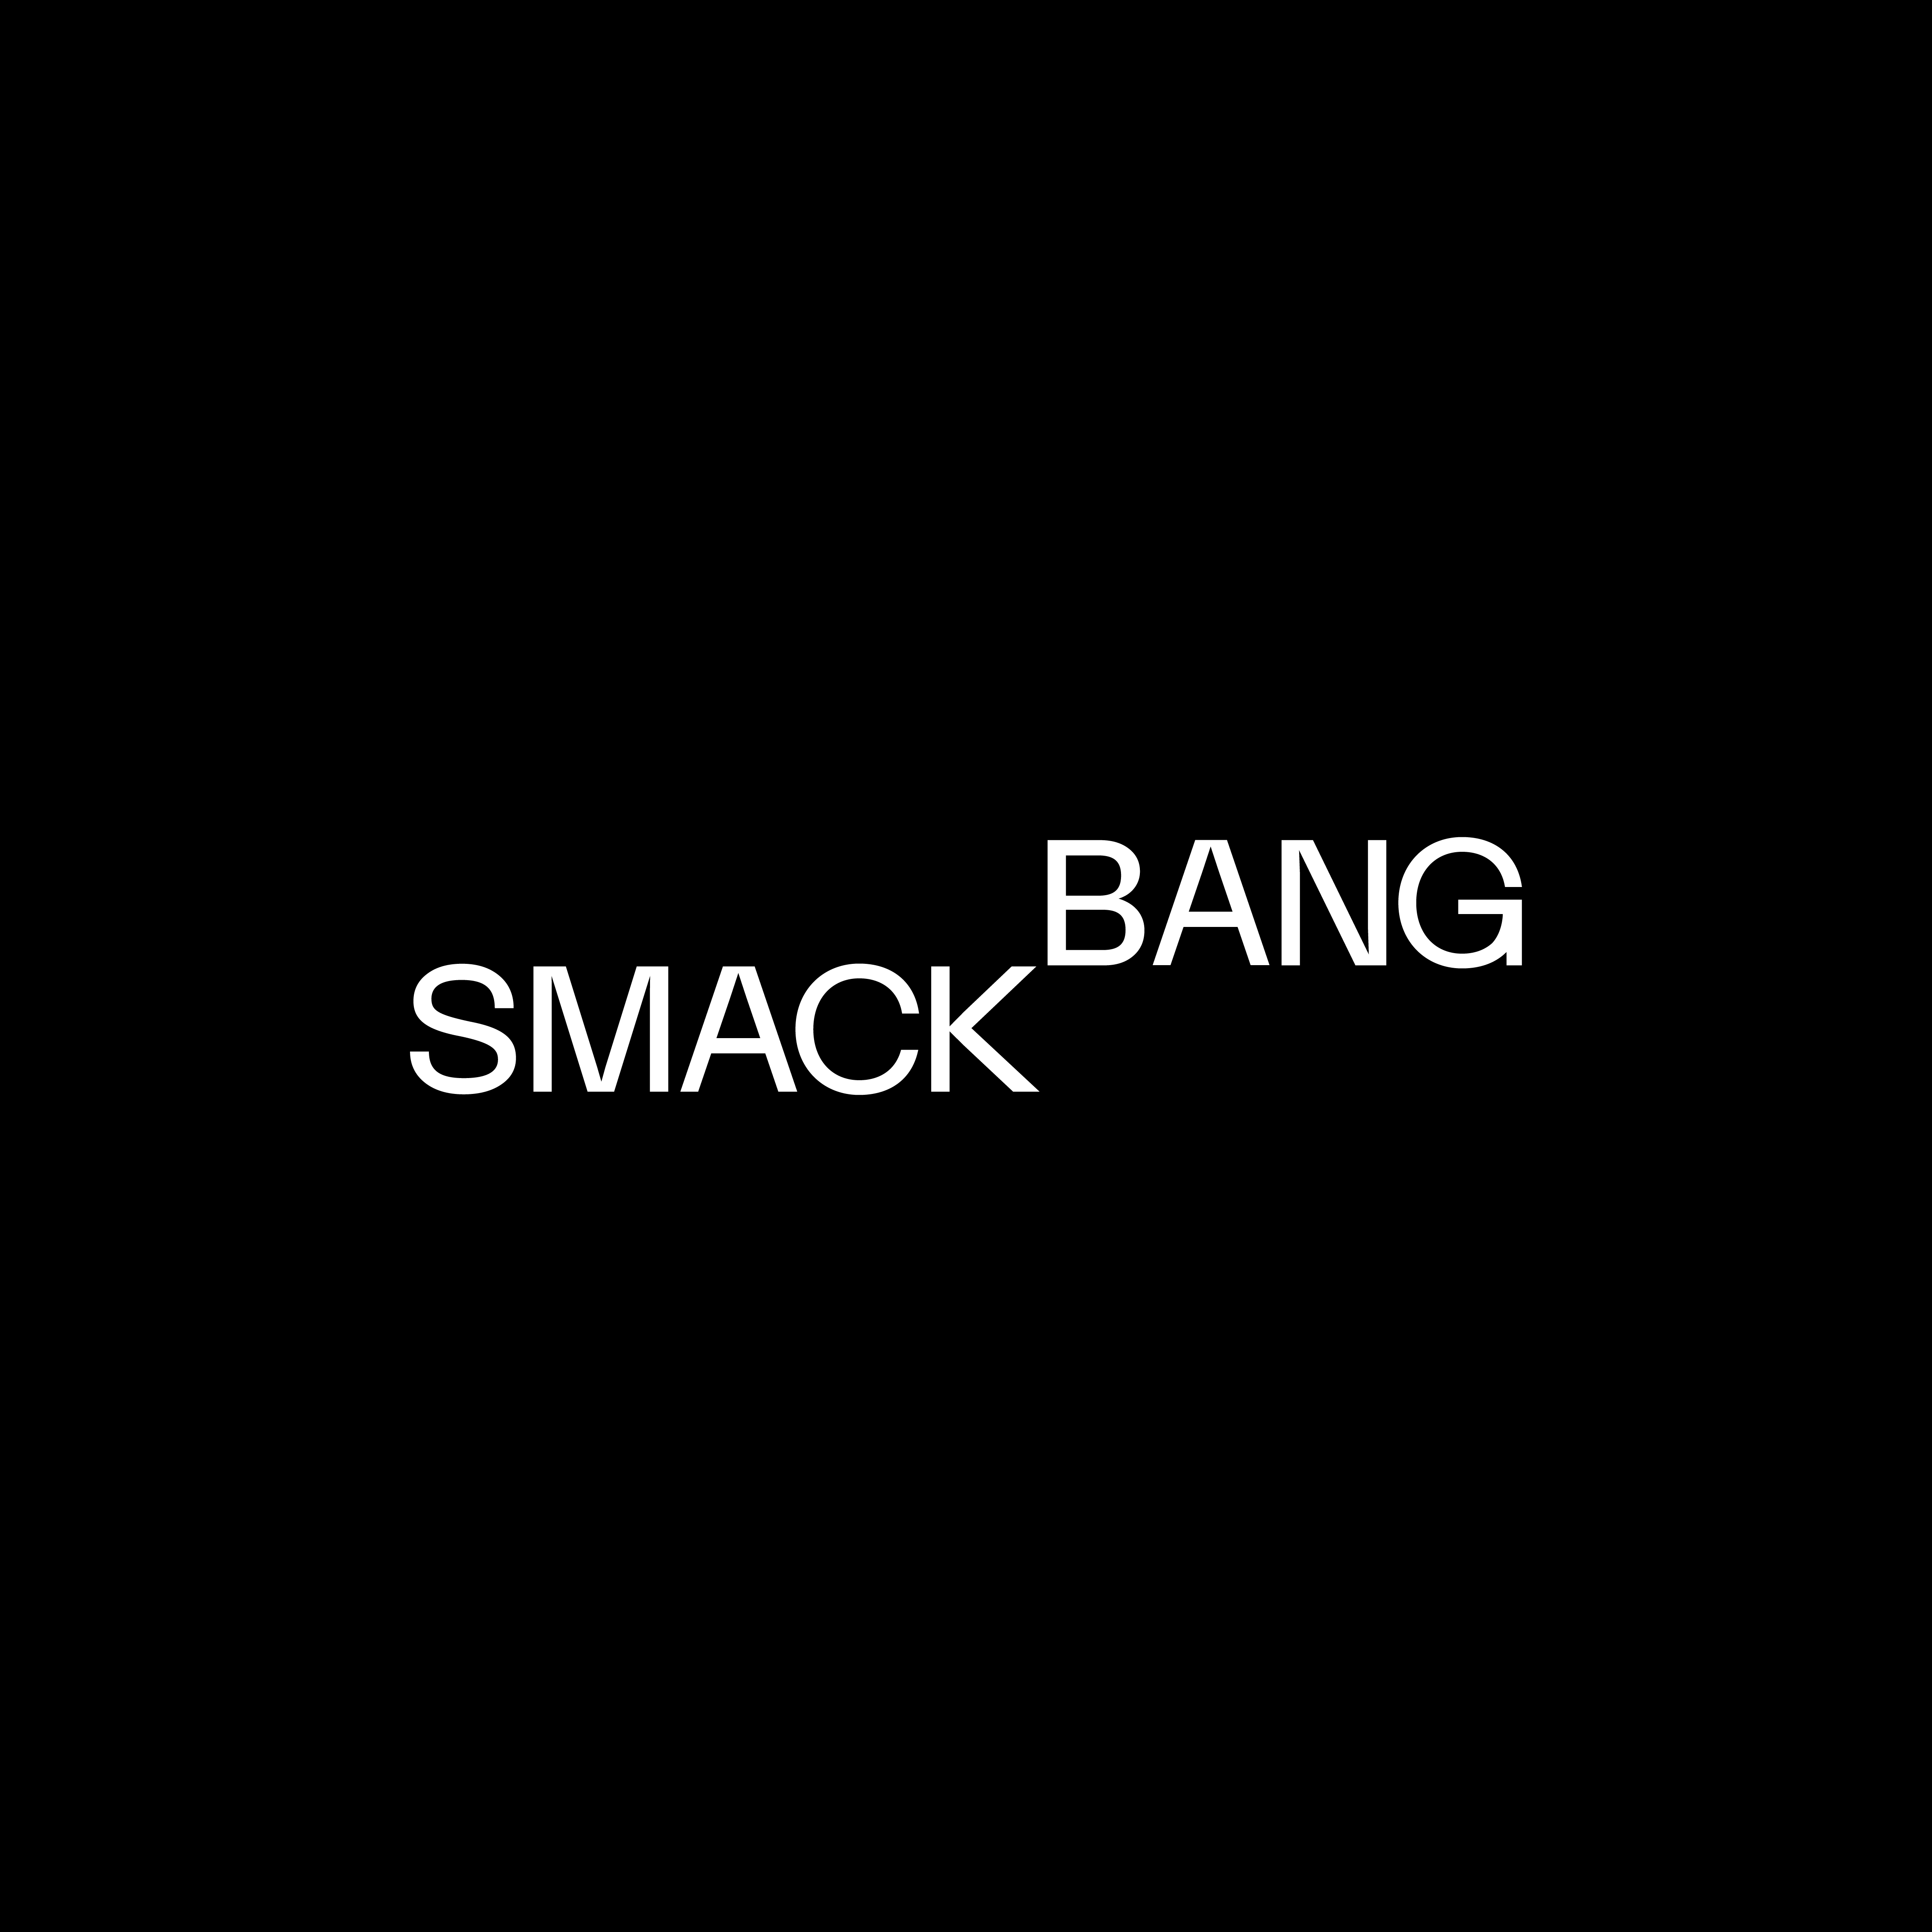 SmackBang